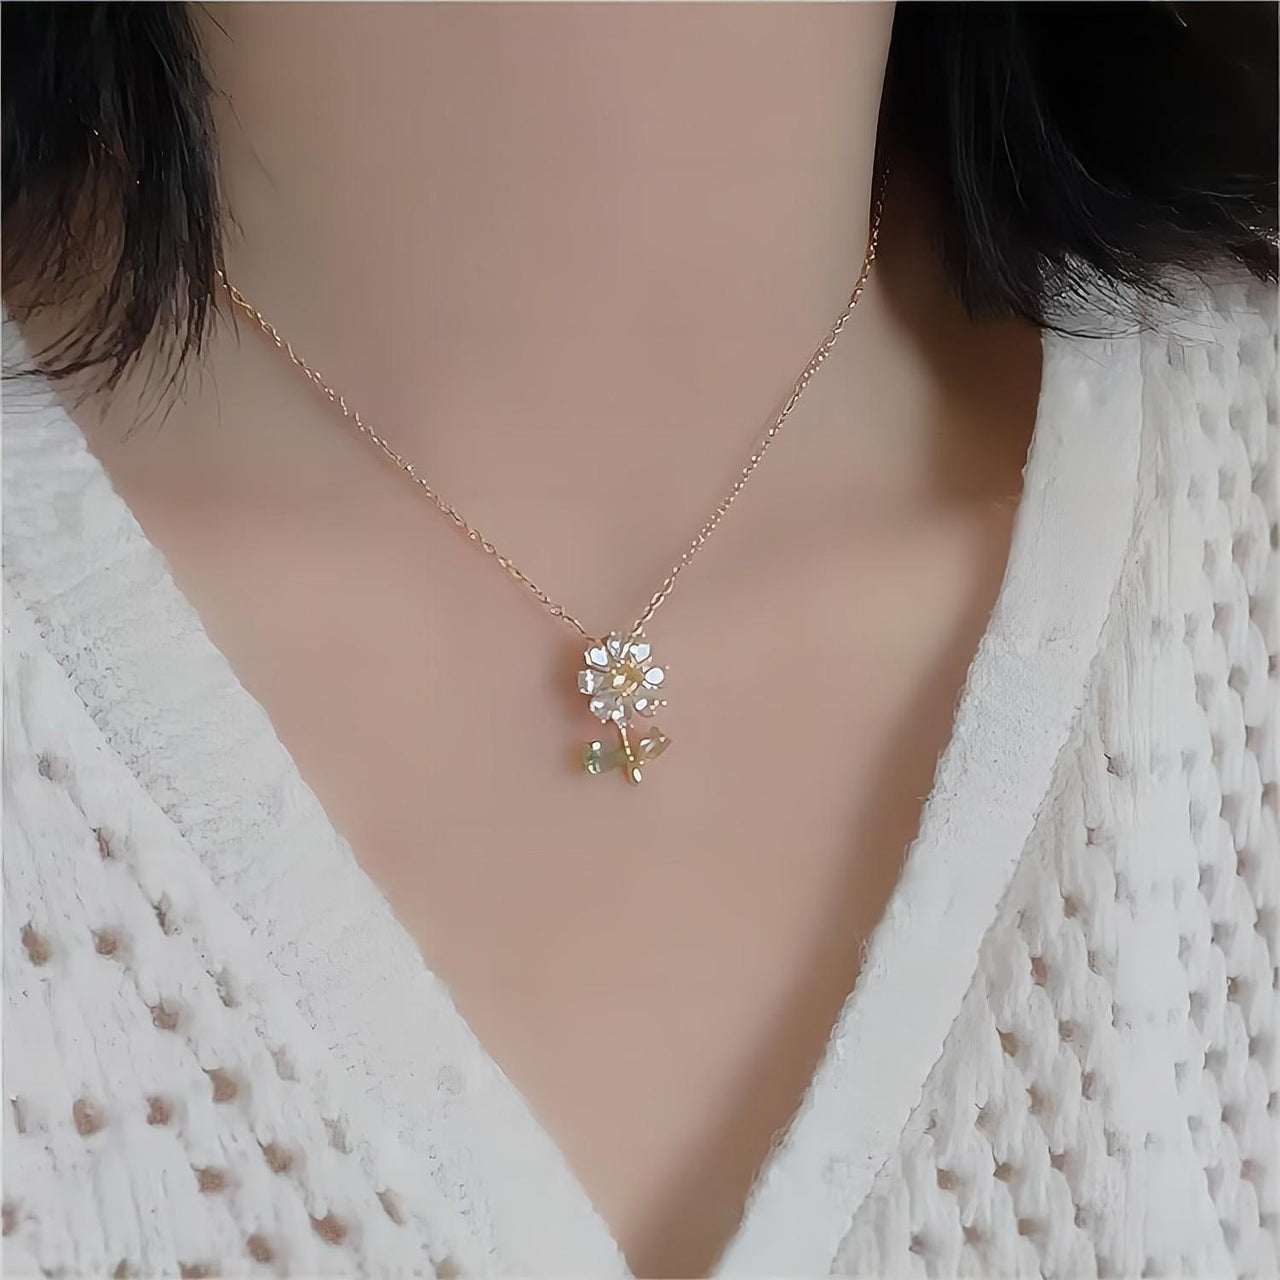 Dainty Crystal Daisy Flower Necklace Earrings Set - ArtGalleryZen